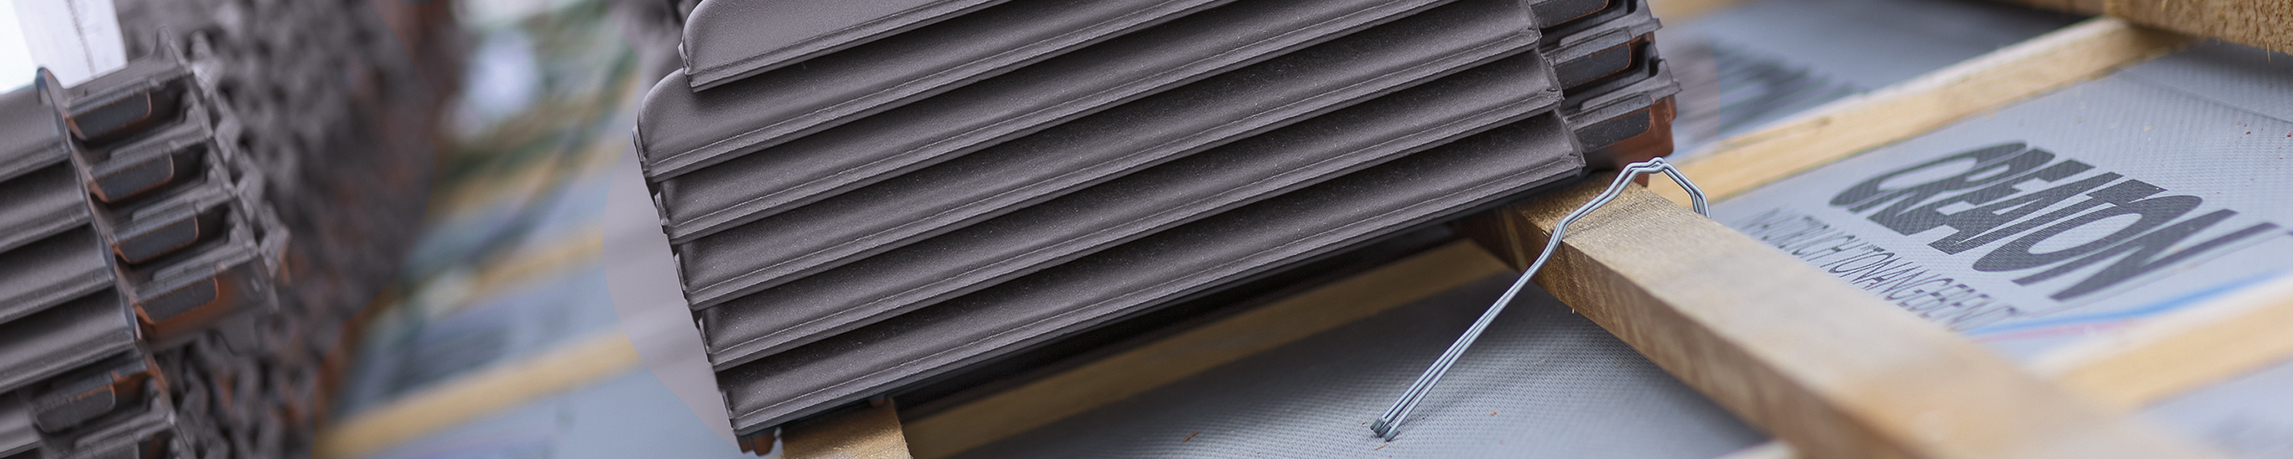 Aké sú hlavné výhody použitia keramických škridiel na streche?